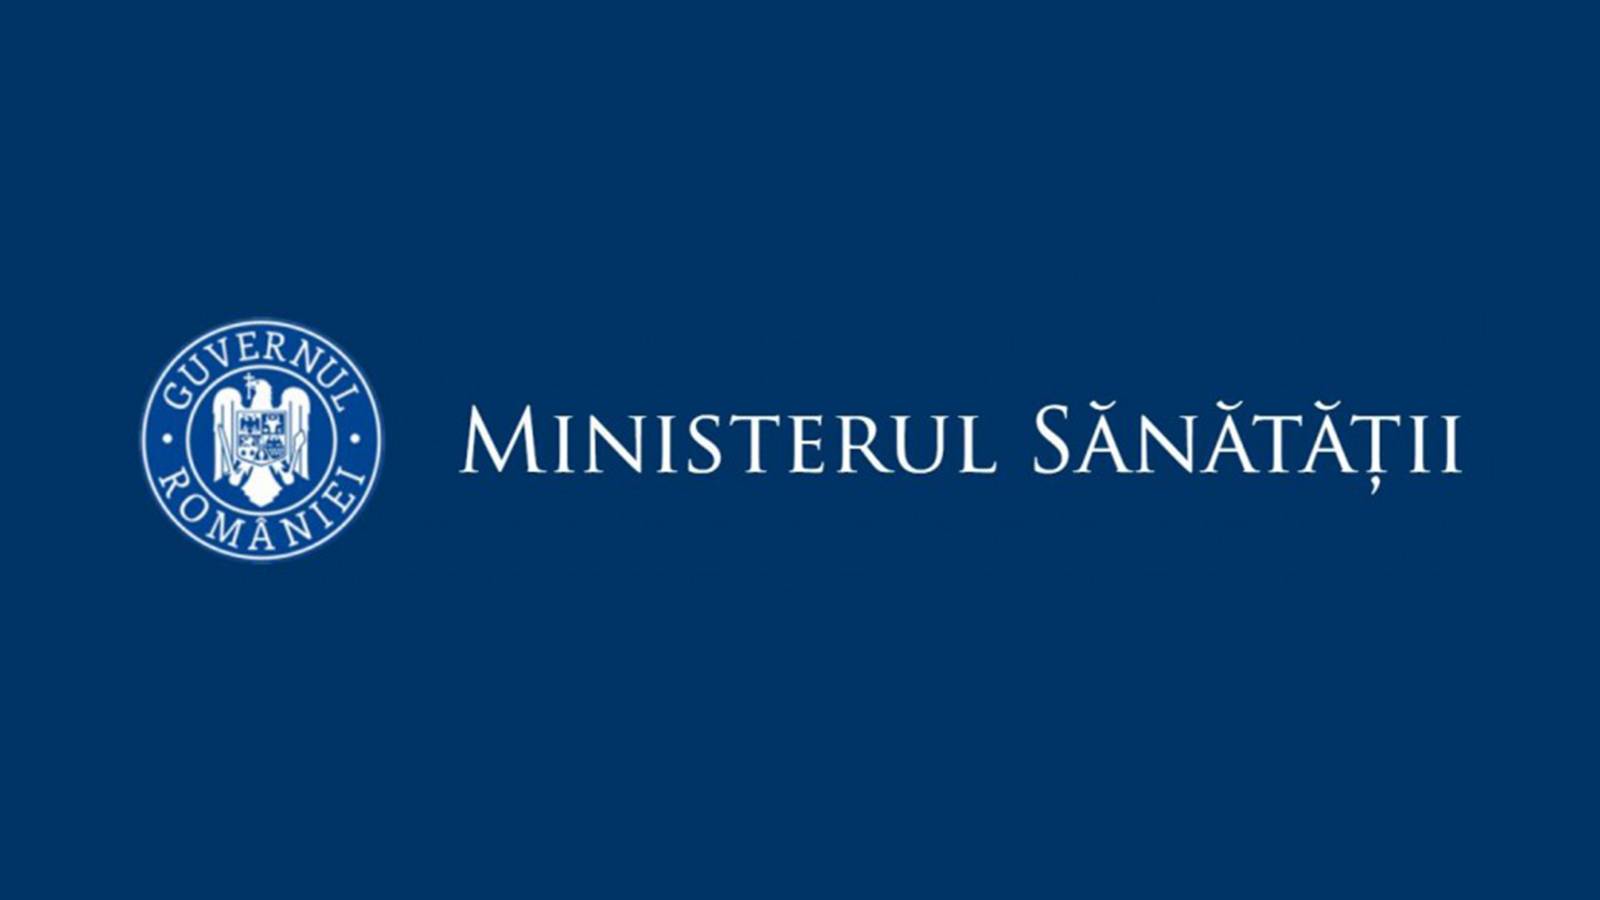 Ministerio de Salud rumano vacunado el 25 de enero